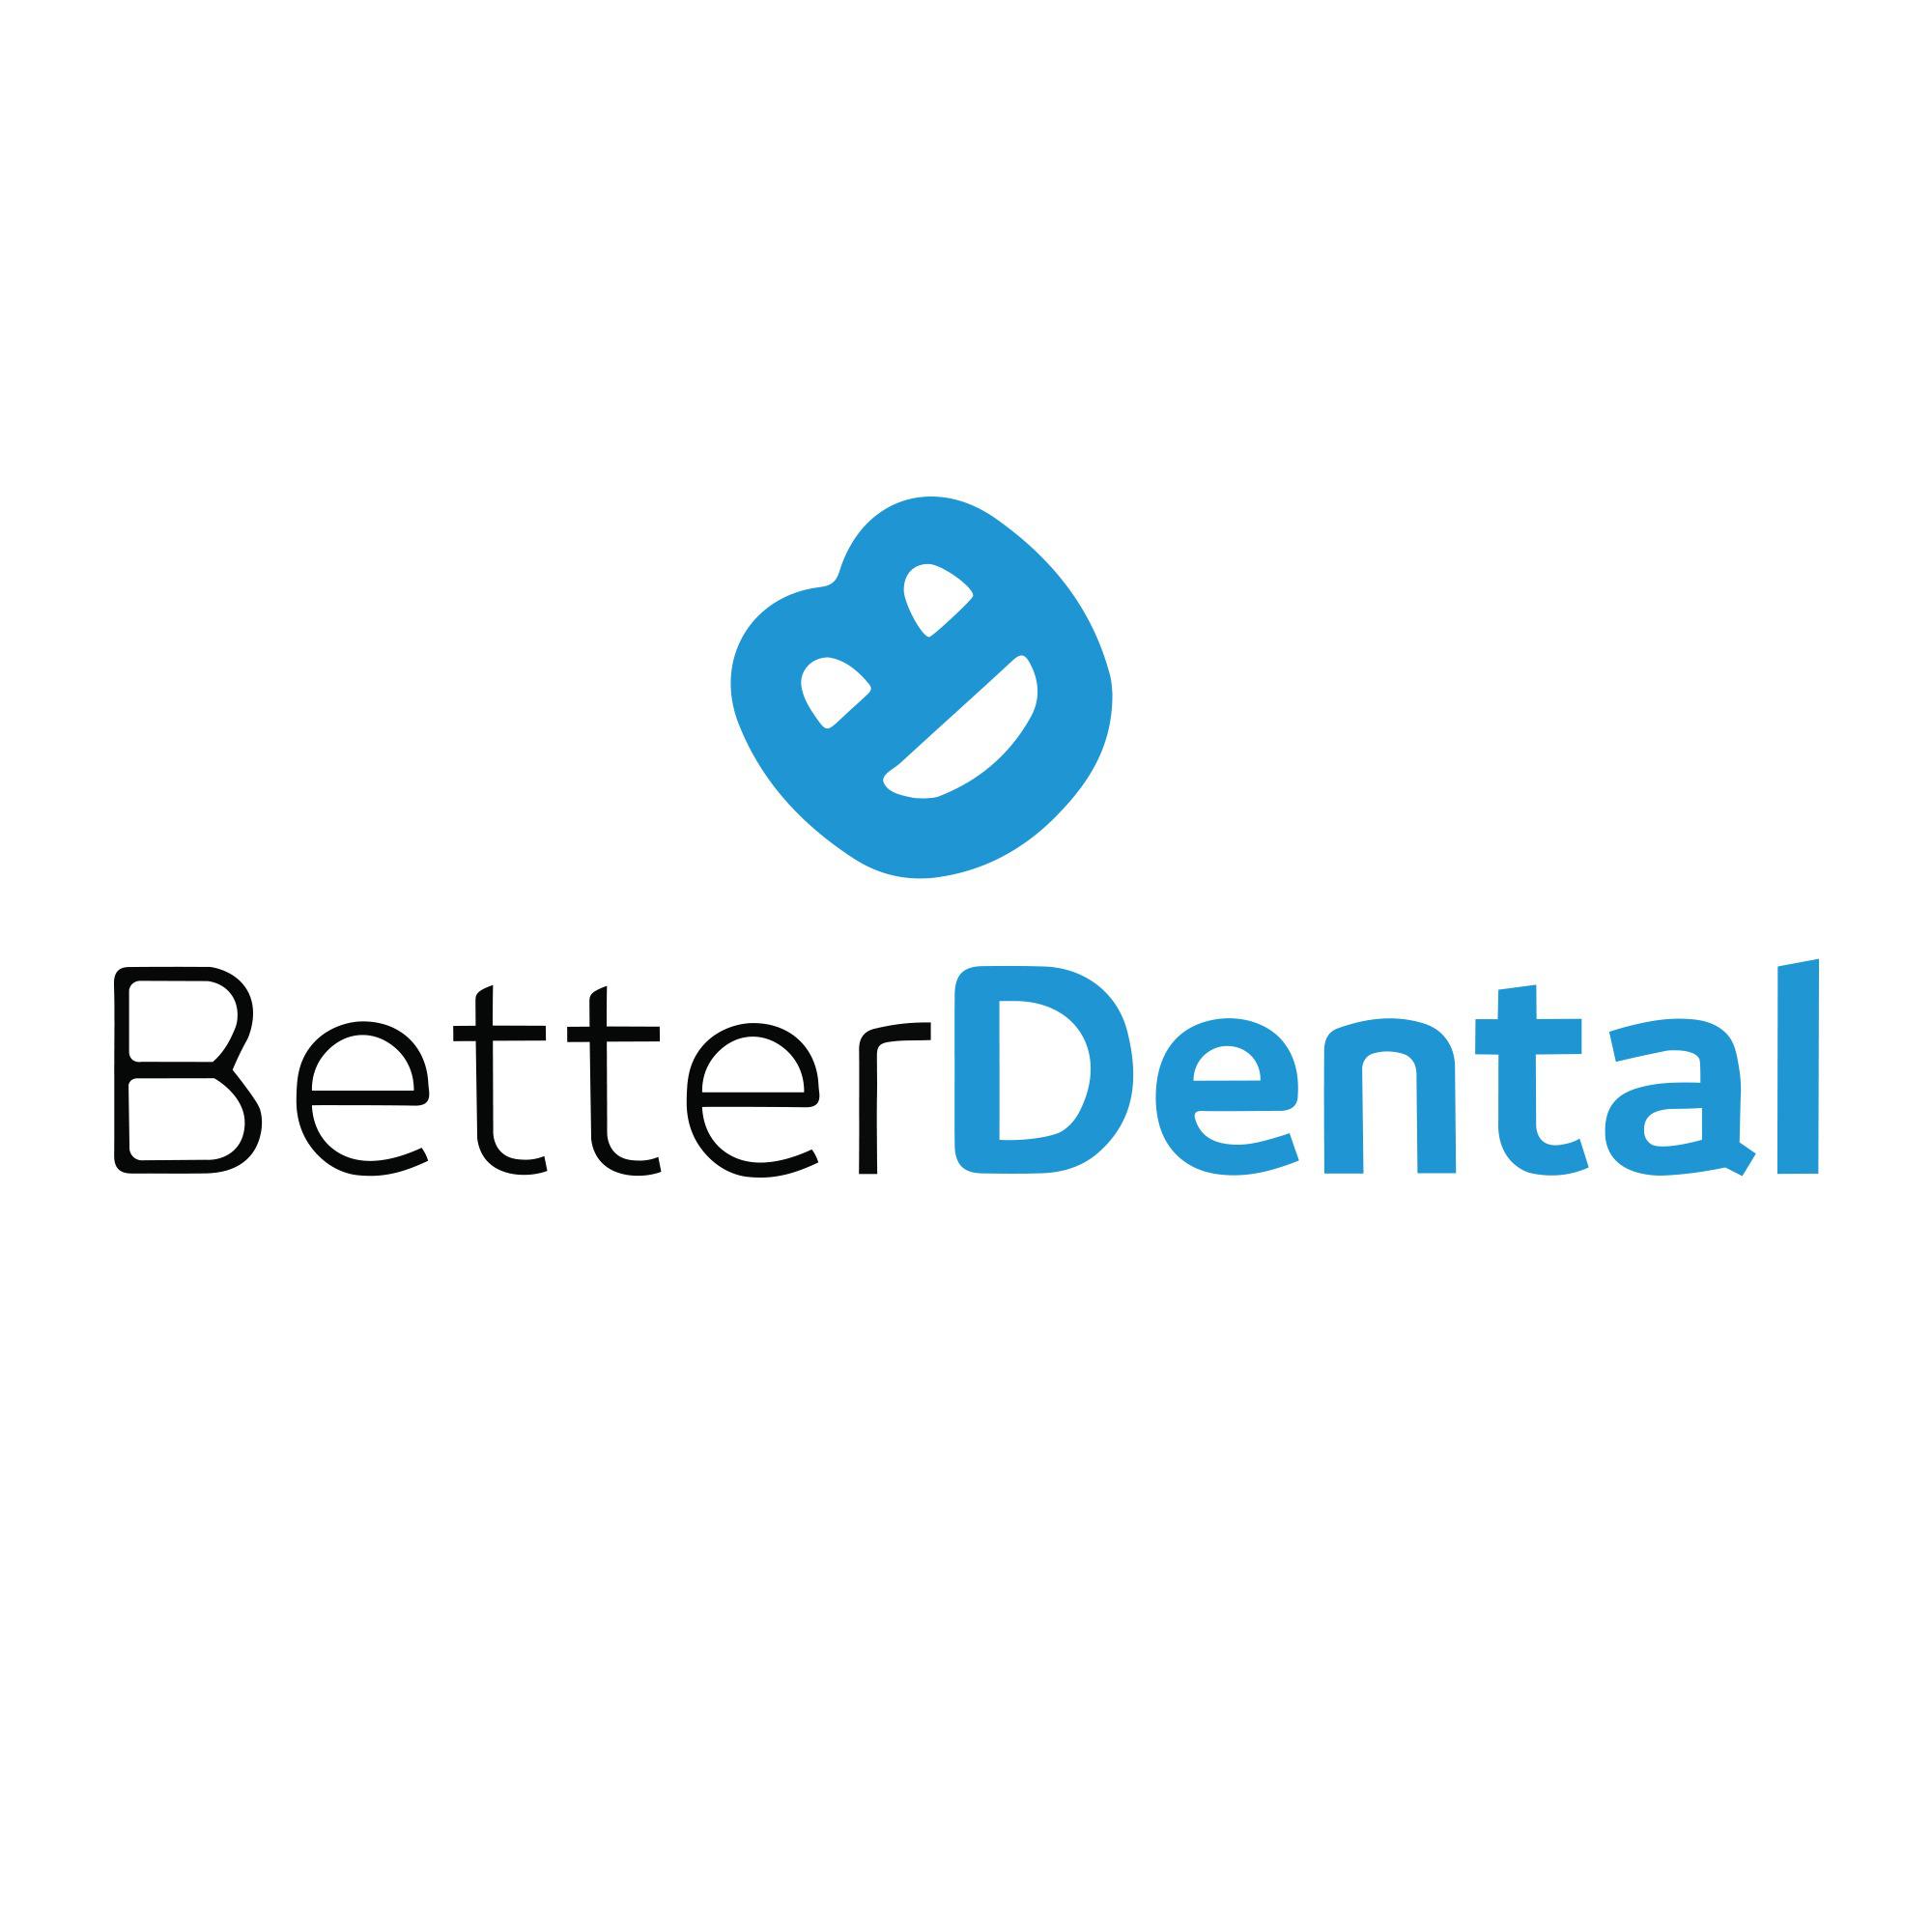 Better Dental - Raleigh Raleigh (919)241-5462